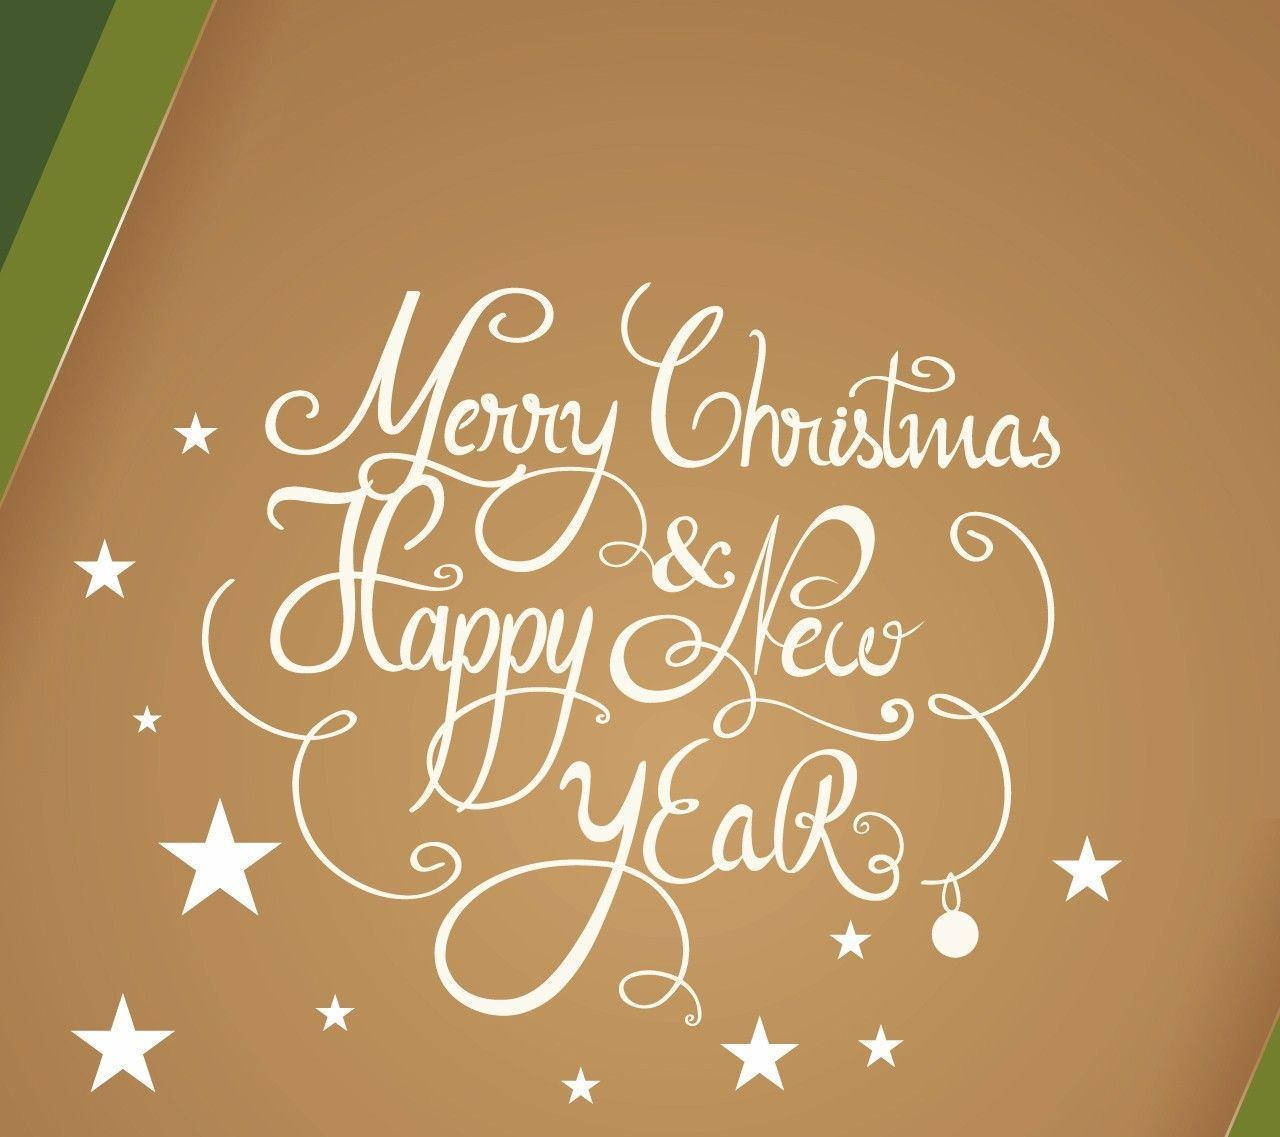 Joyful New Year Message on a Notebook Wallpaper